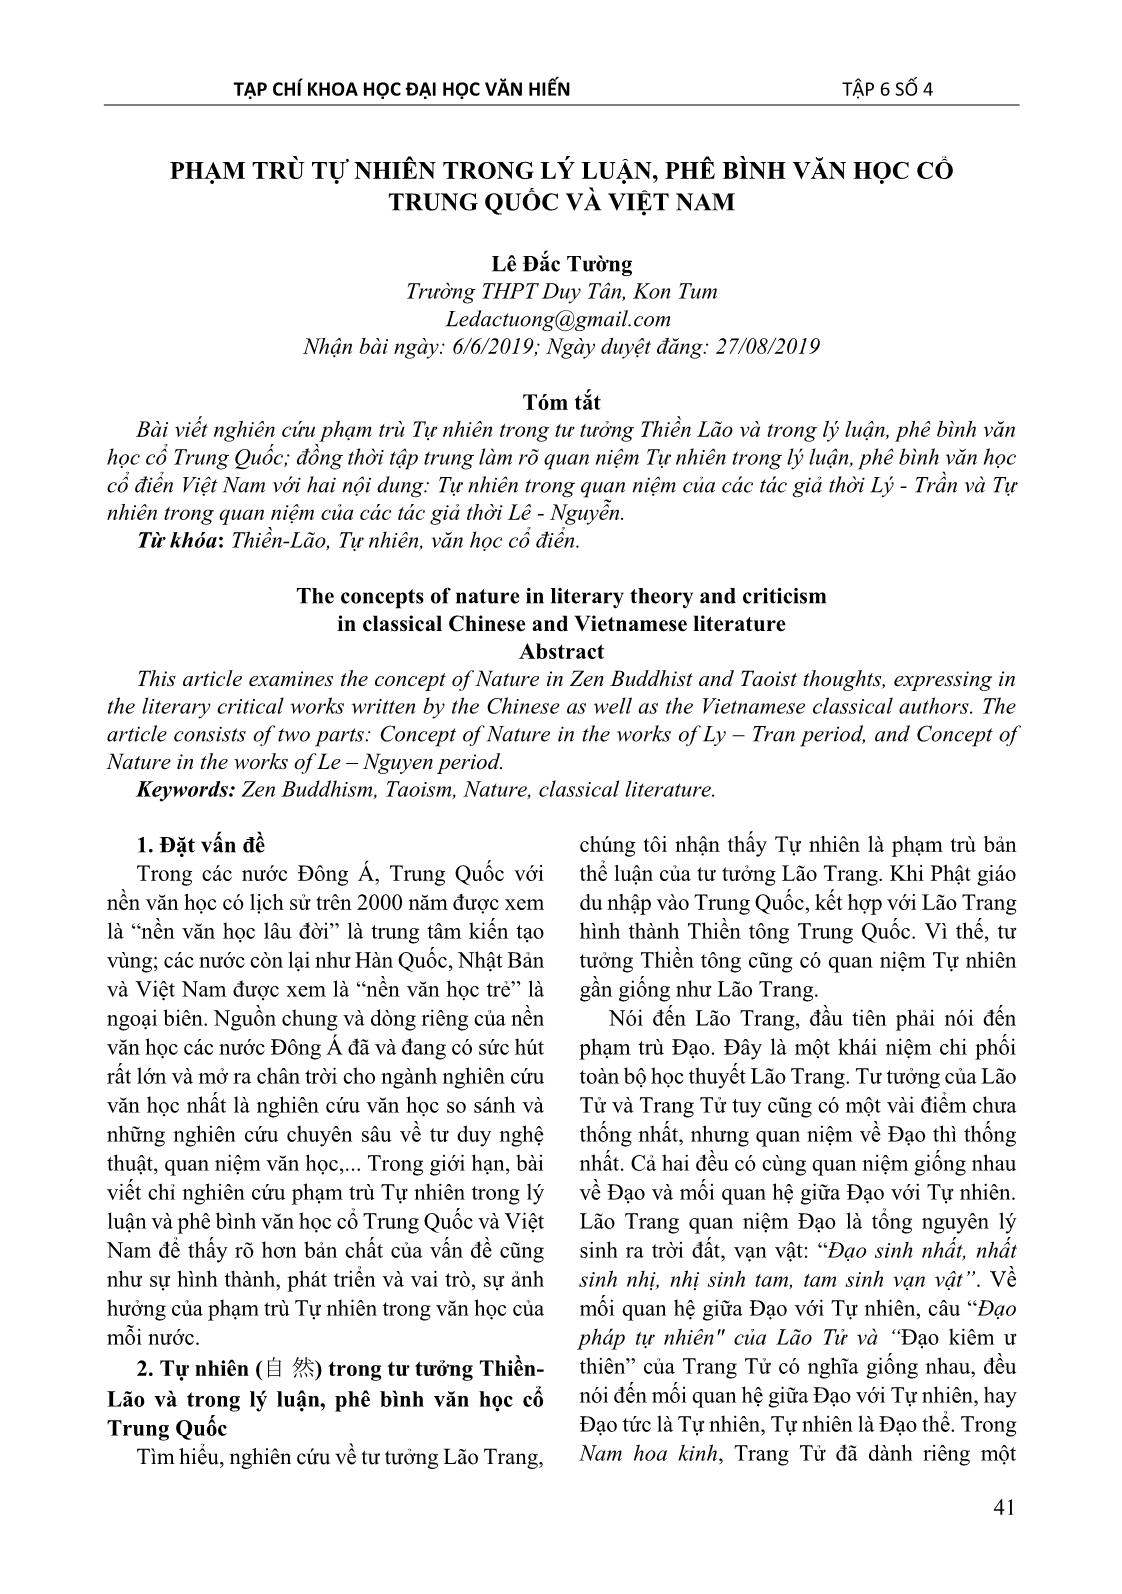 Phạm trù tự nhiên trong lý luận, phê bình văn học cổ Trung quốc và Việt Nam trang 1